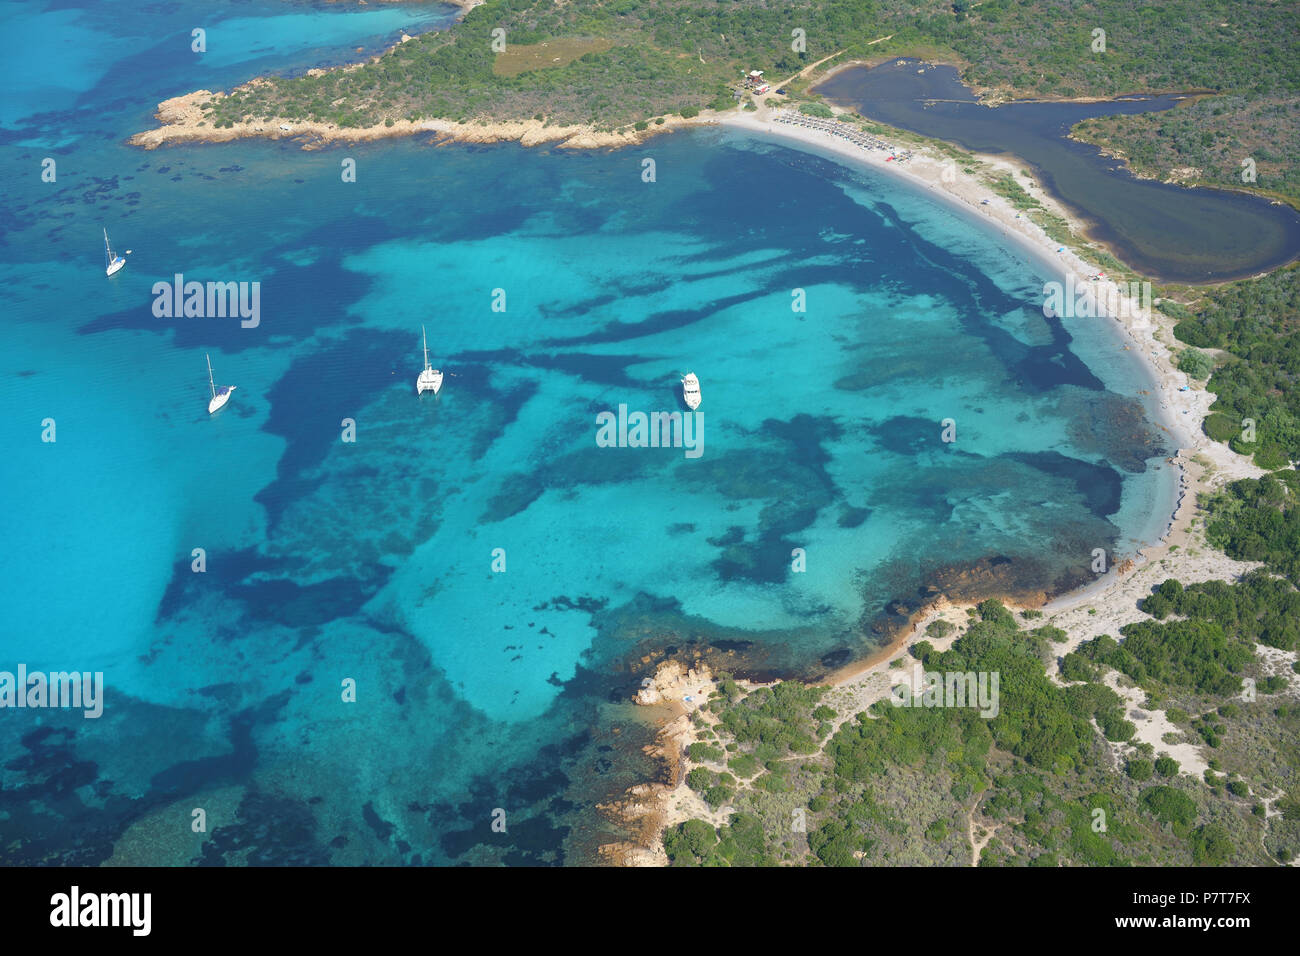 VISTA AEREA. Baia riparata con acque azzurre. Spiaggia di Salinedda, Capo coda Cavallo, Provincia di Sassari, Sardegna, Italia. Foto Stock